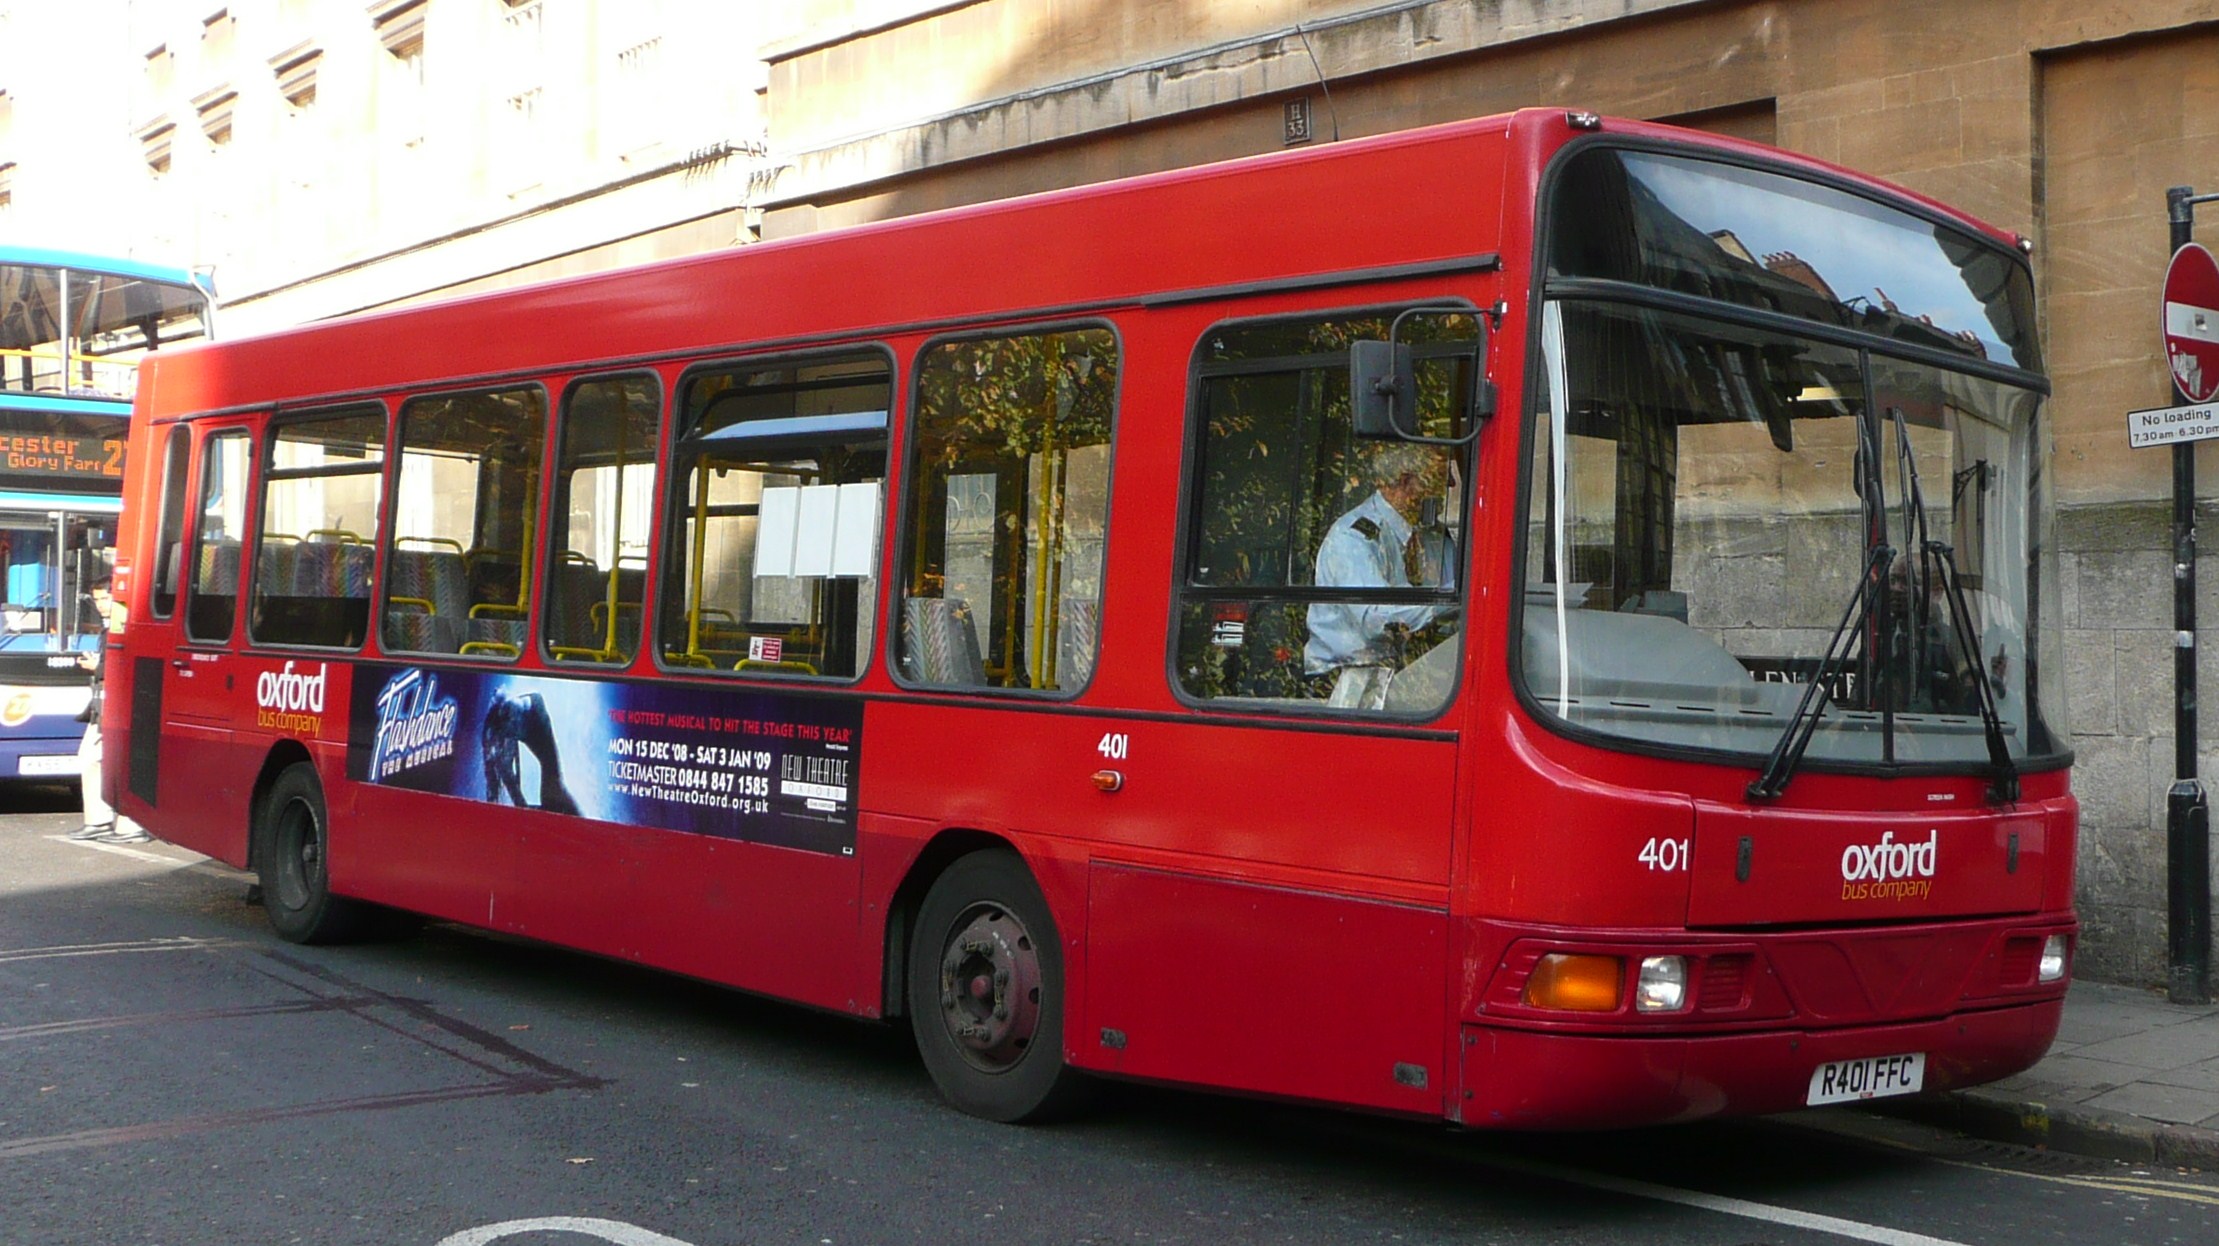 Bus companies. Oxford автобус x90. Рыжие автобусы man Королев.